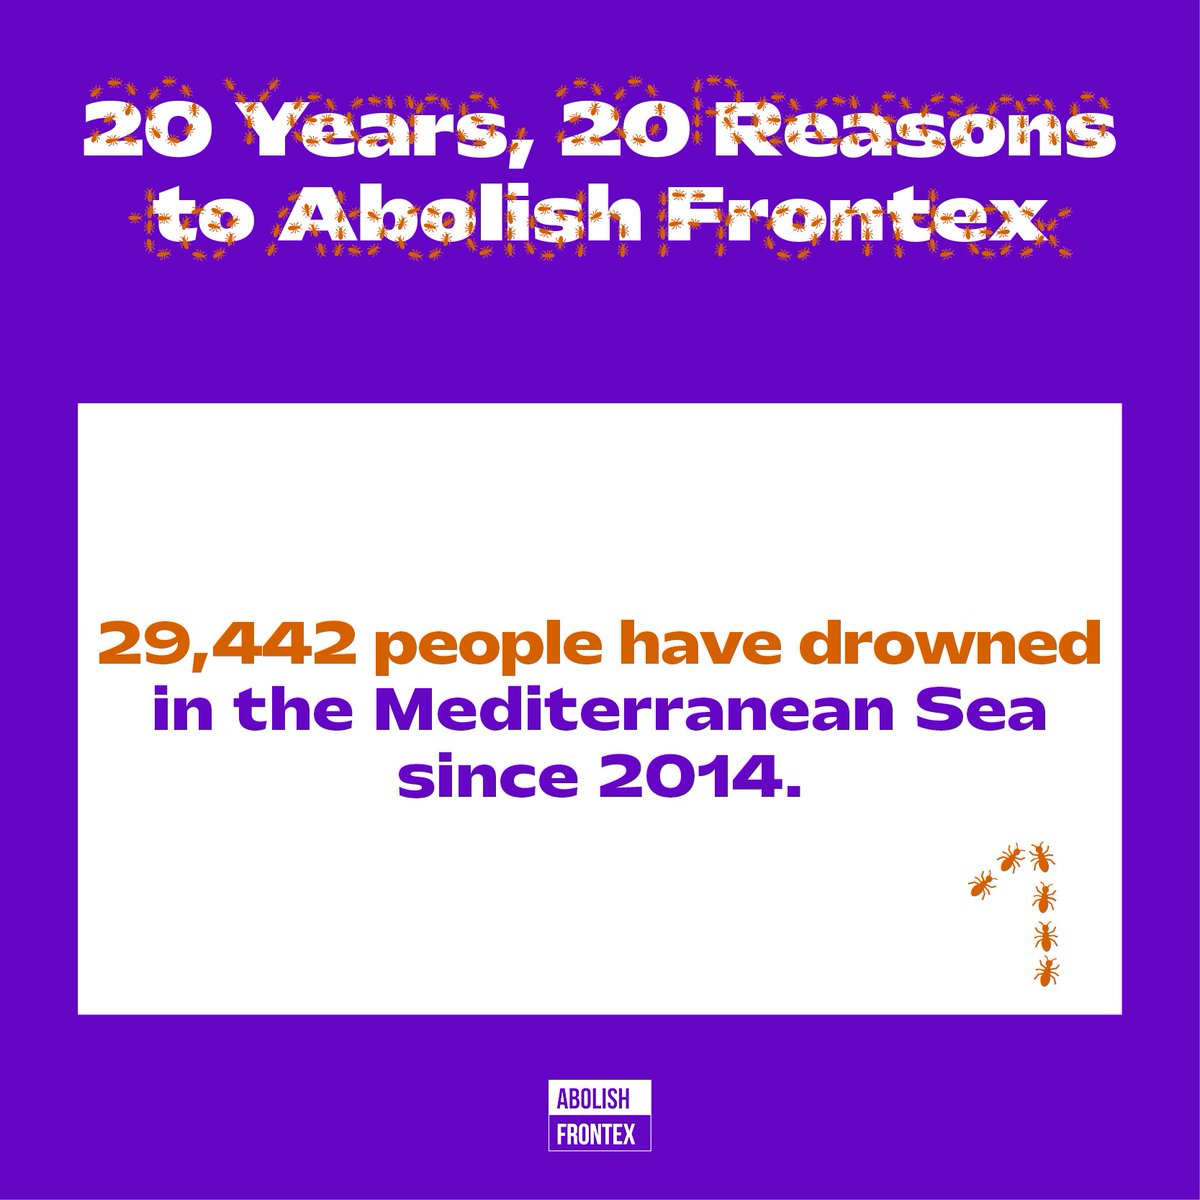 ✊ 20 years, 20 reasons to #AbolishFrontex